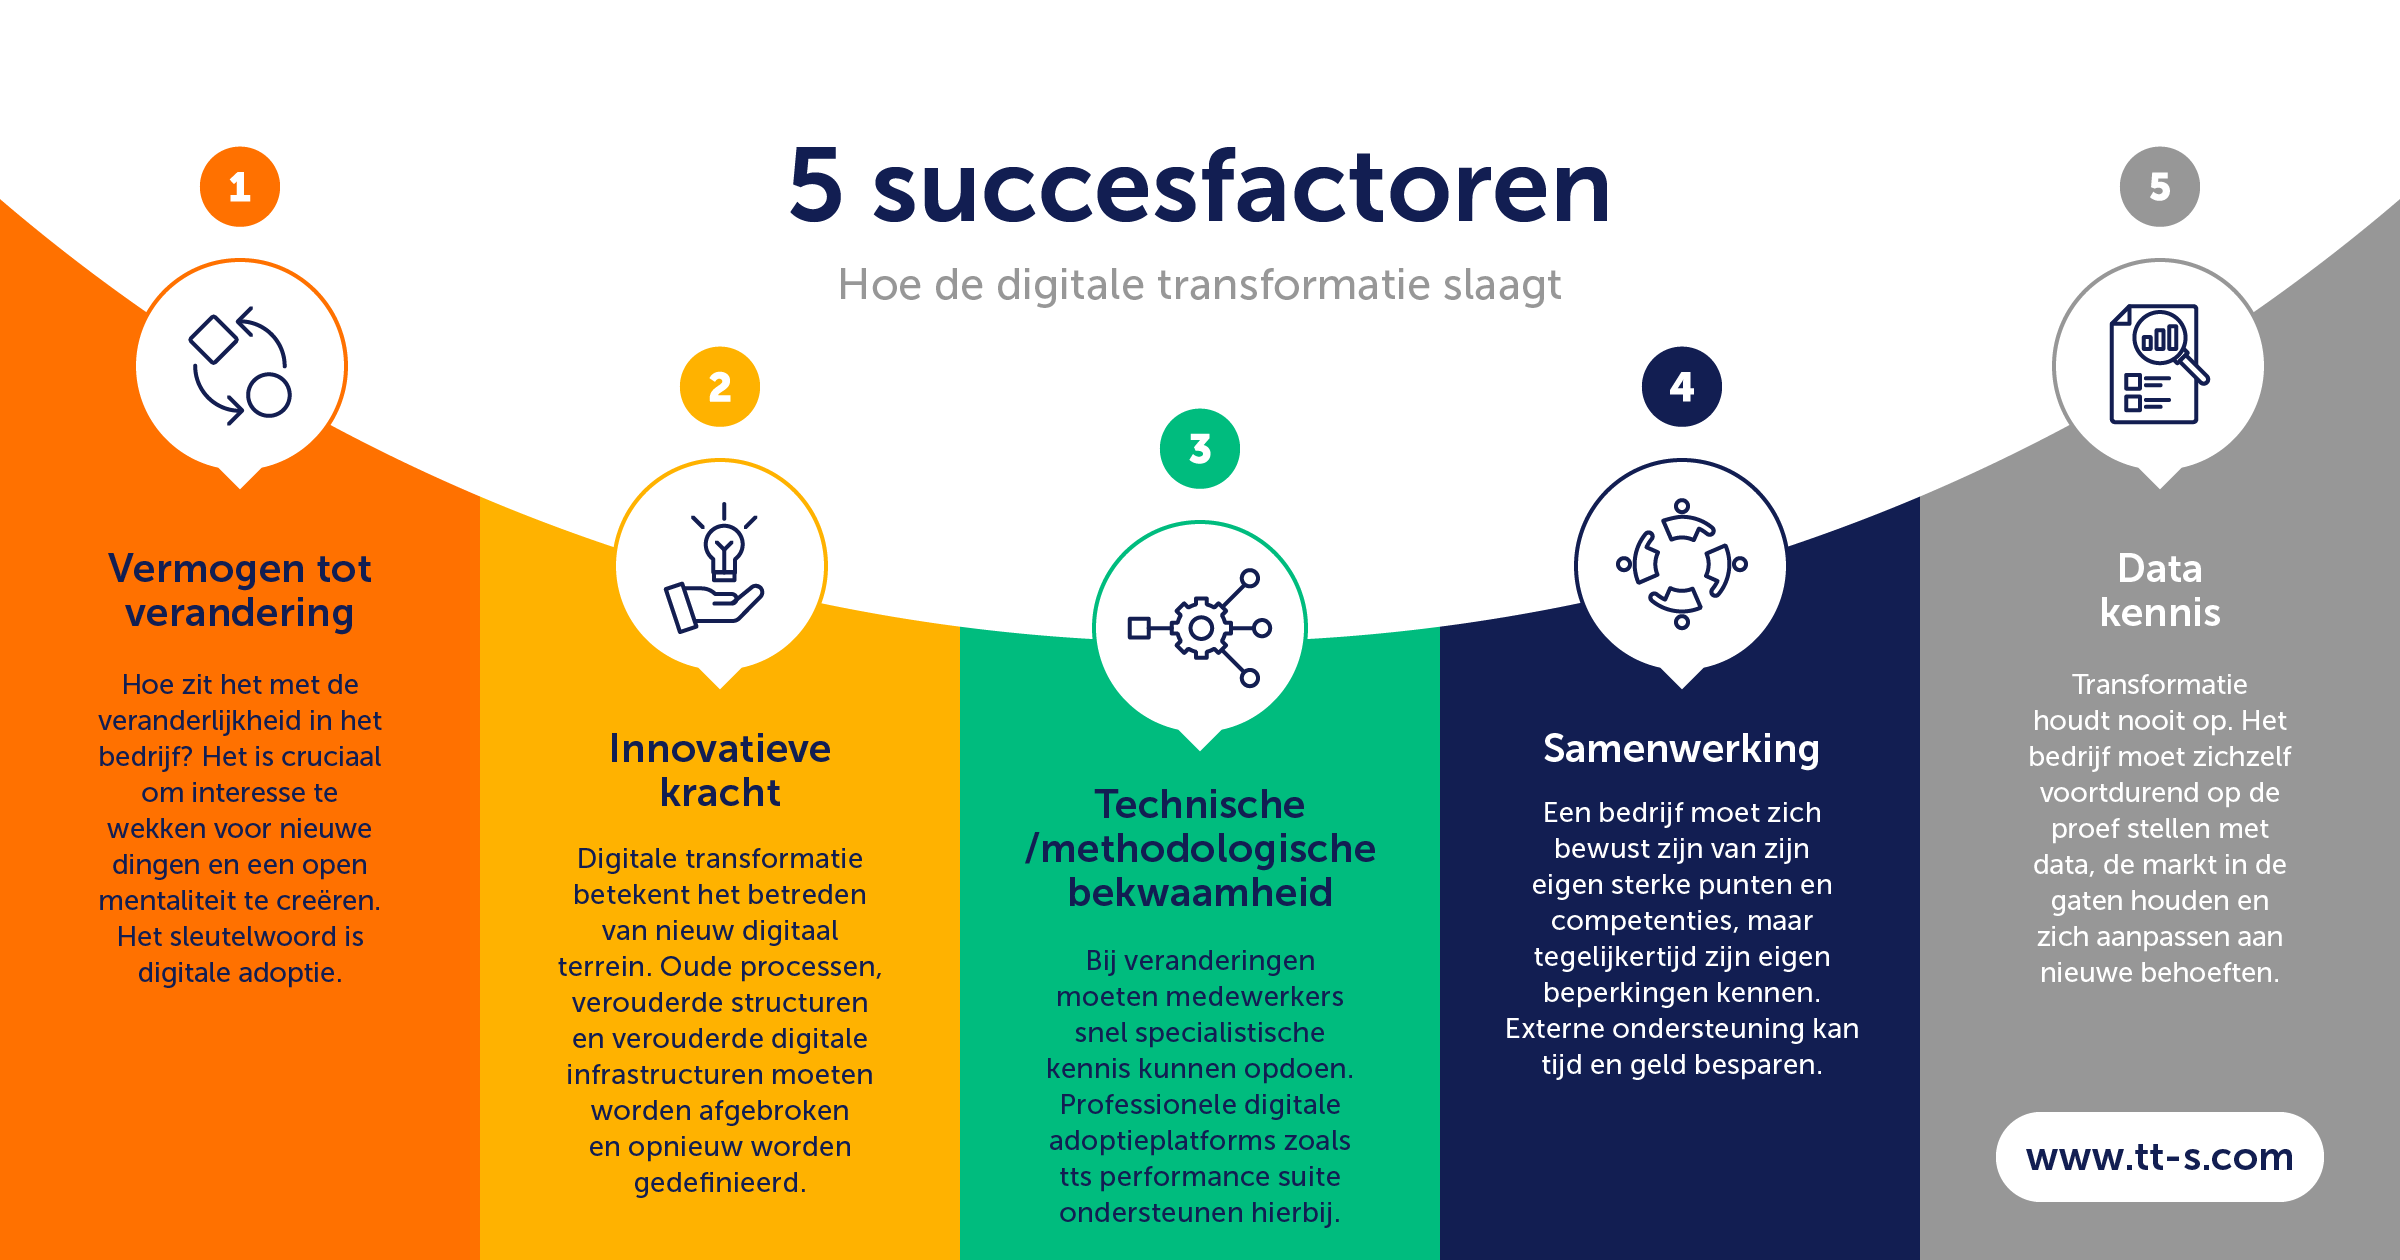 Vijf succesfactoren voor een succesvolle digitale transformatie (competenties en voorwaarden).